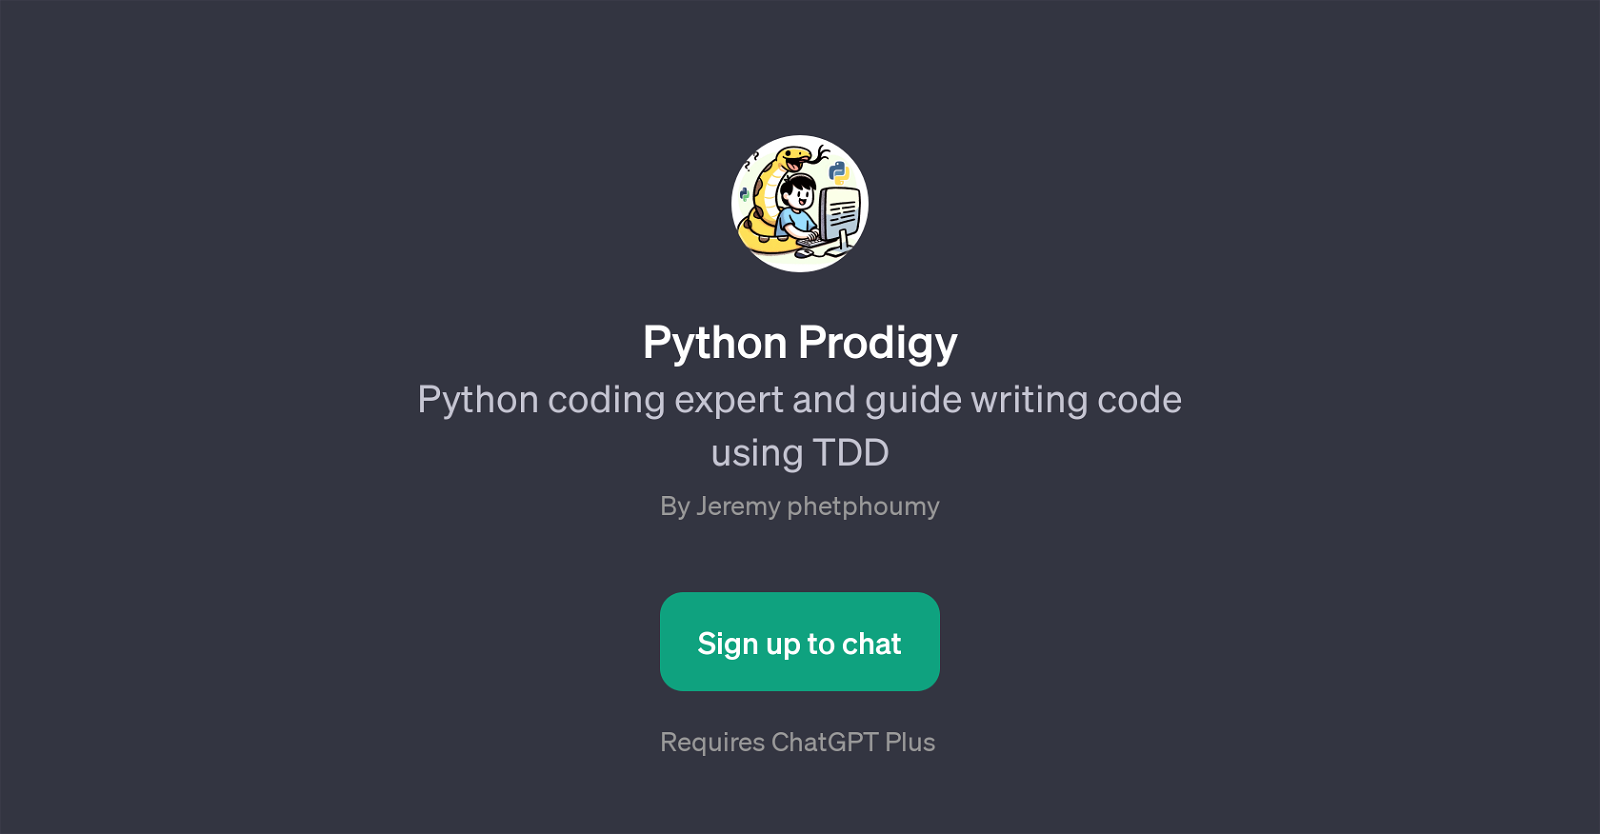 Python Prodigy website